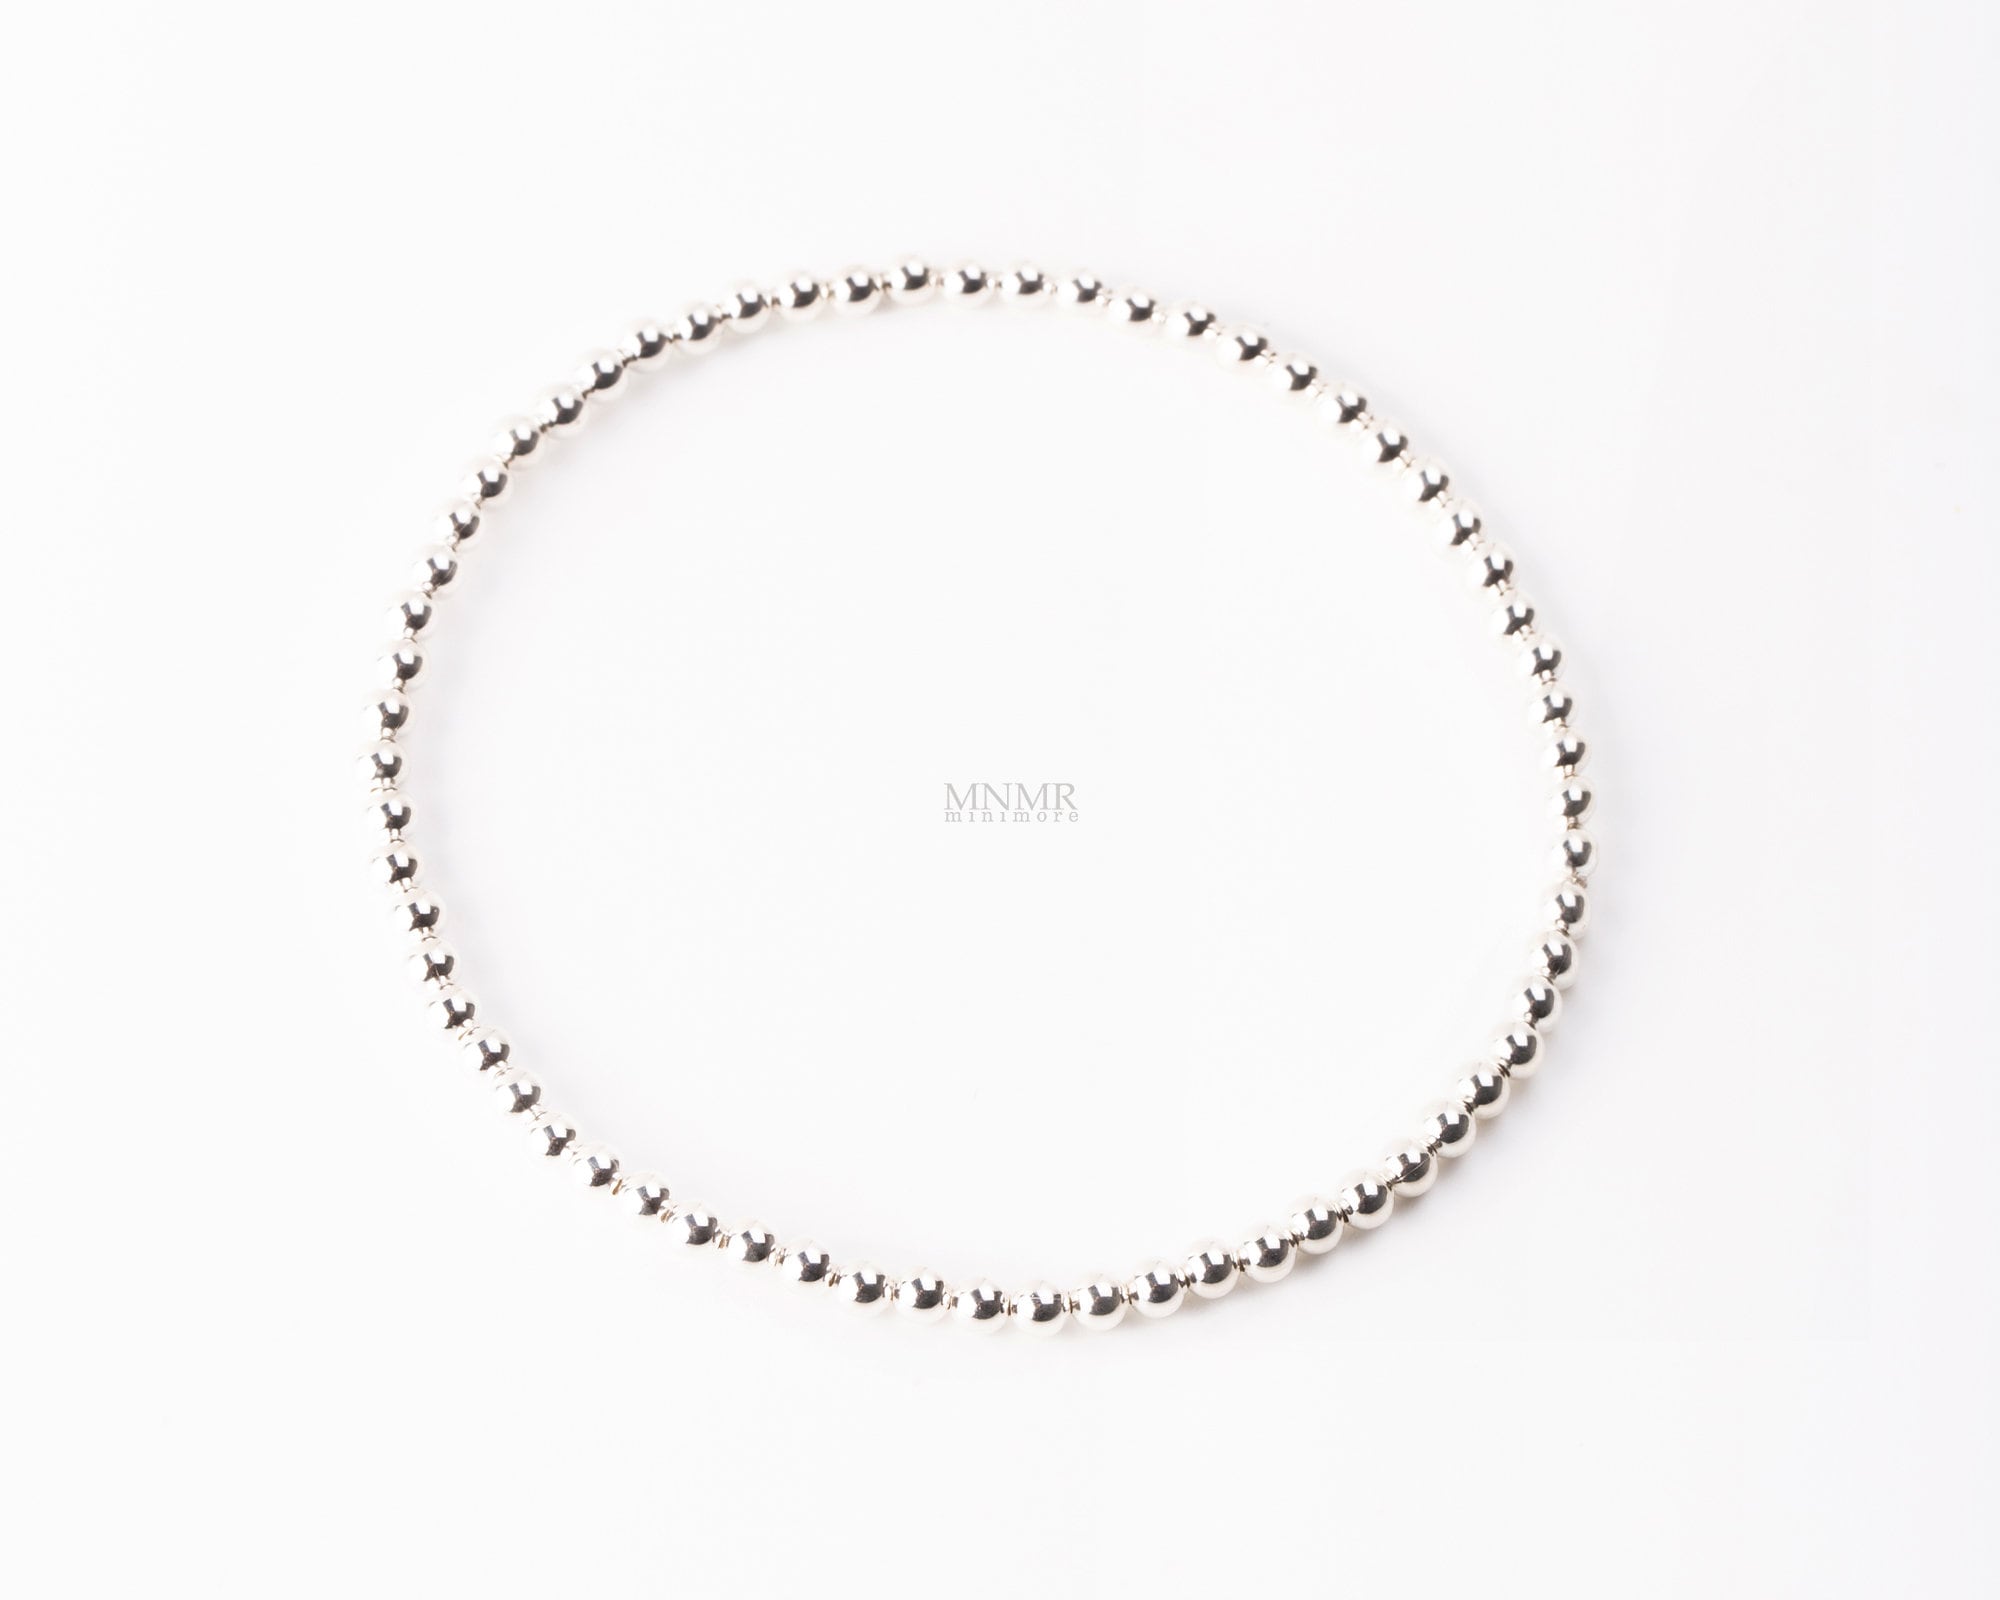 3mm Aged Sterling Silver Beads Bracelet – Kompsós